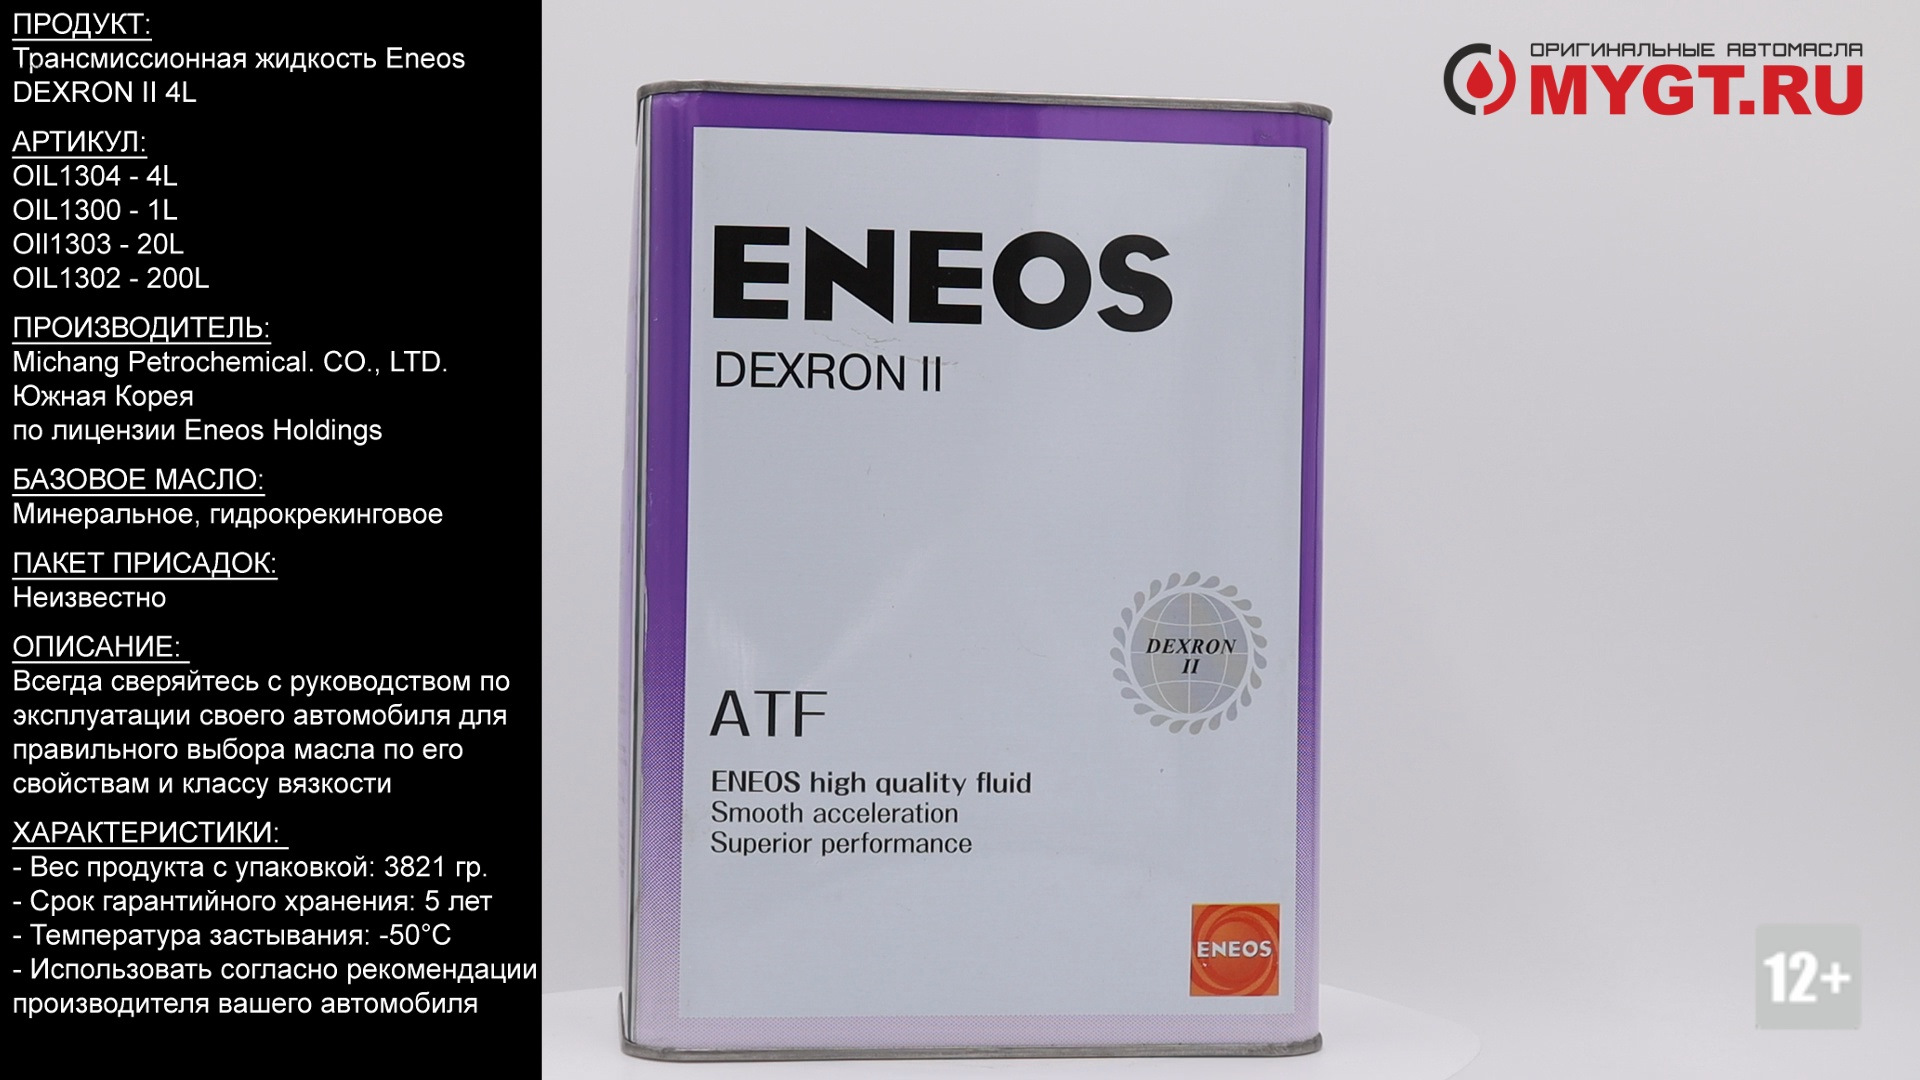 Eneos atf dexron. ENEOS oil1300 деталь. Oil1304 ENEOS. Oil1300 ENEOS масло трансмиссионное. Енеос декстрон 3.